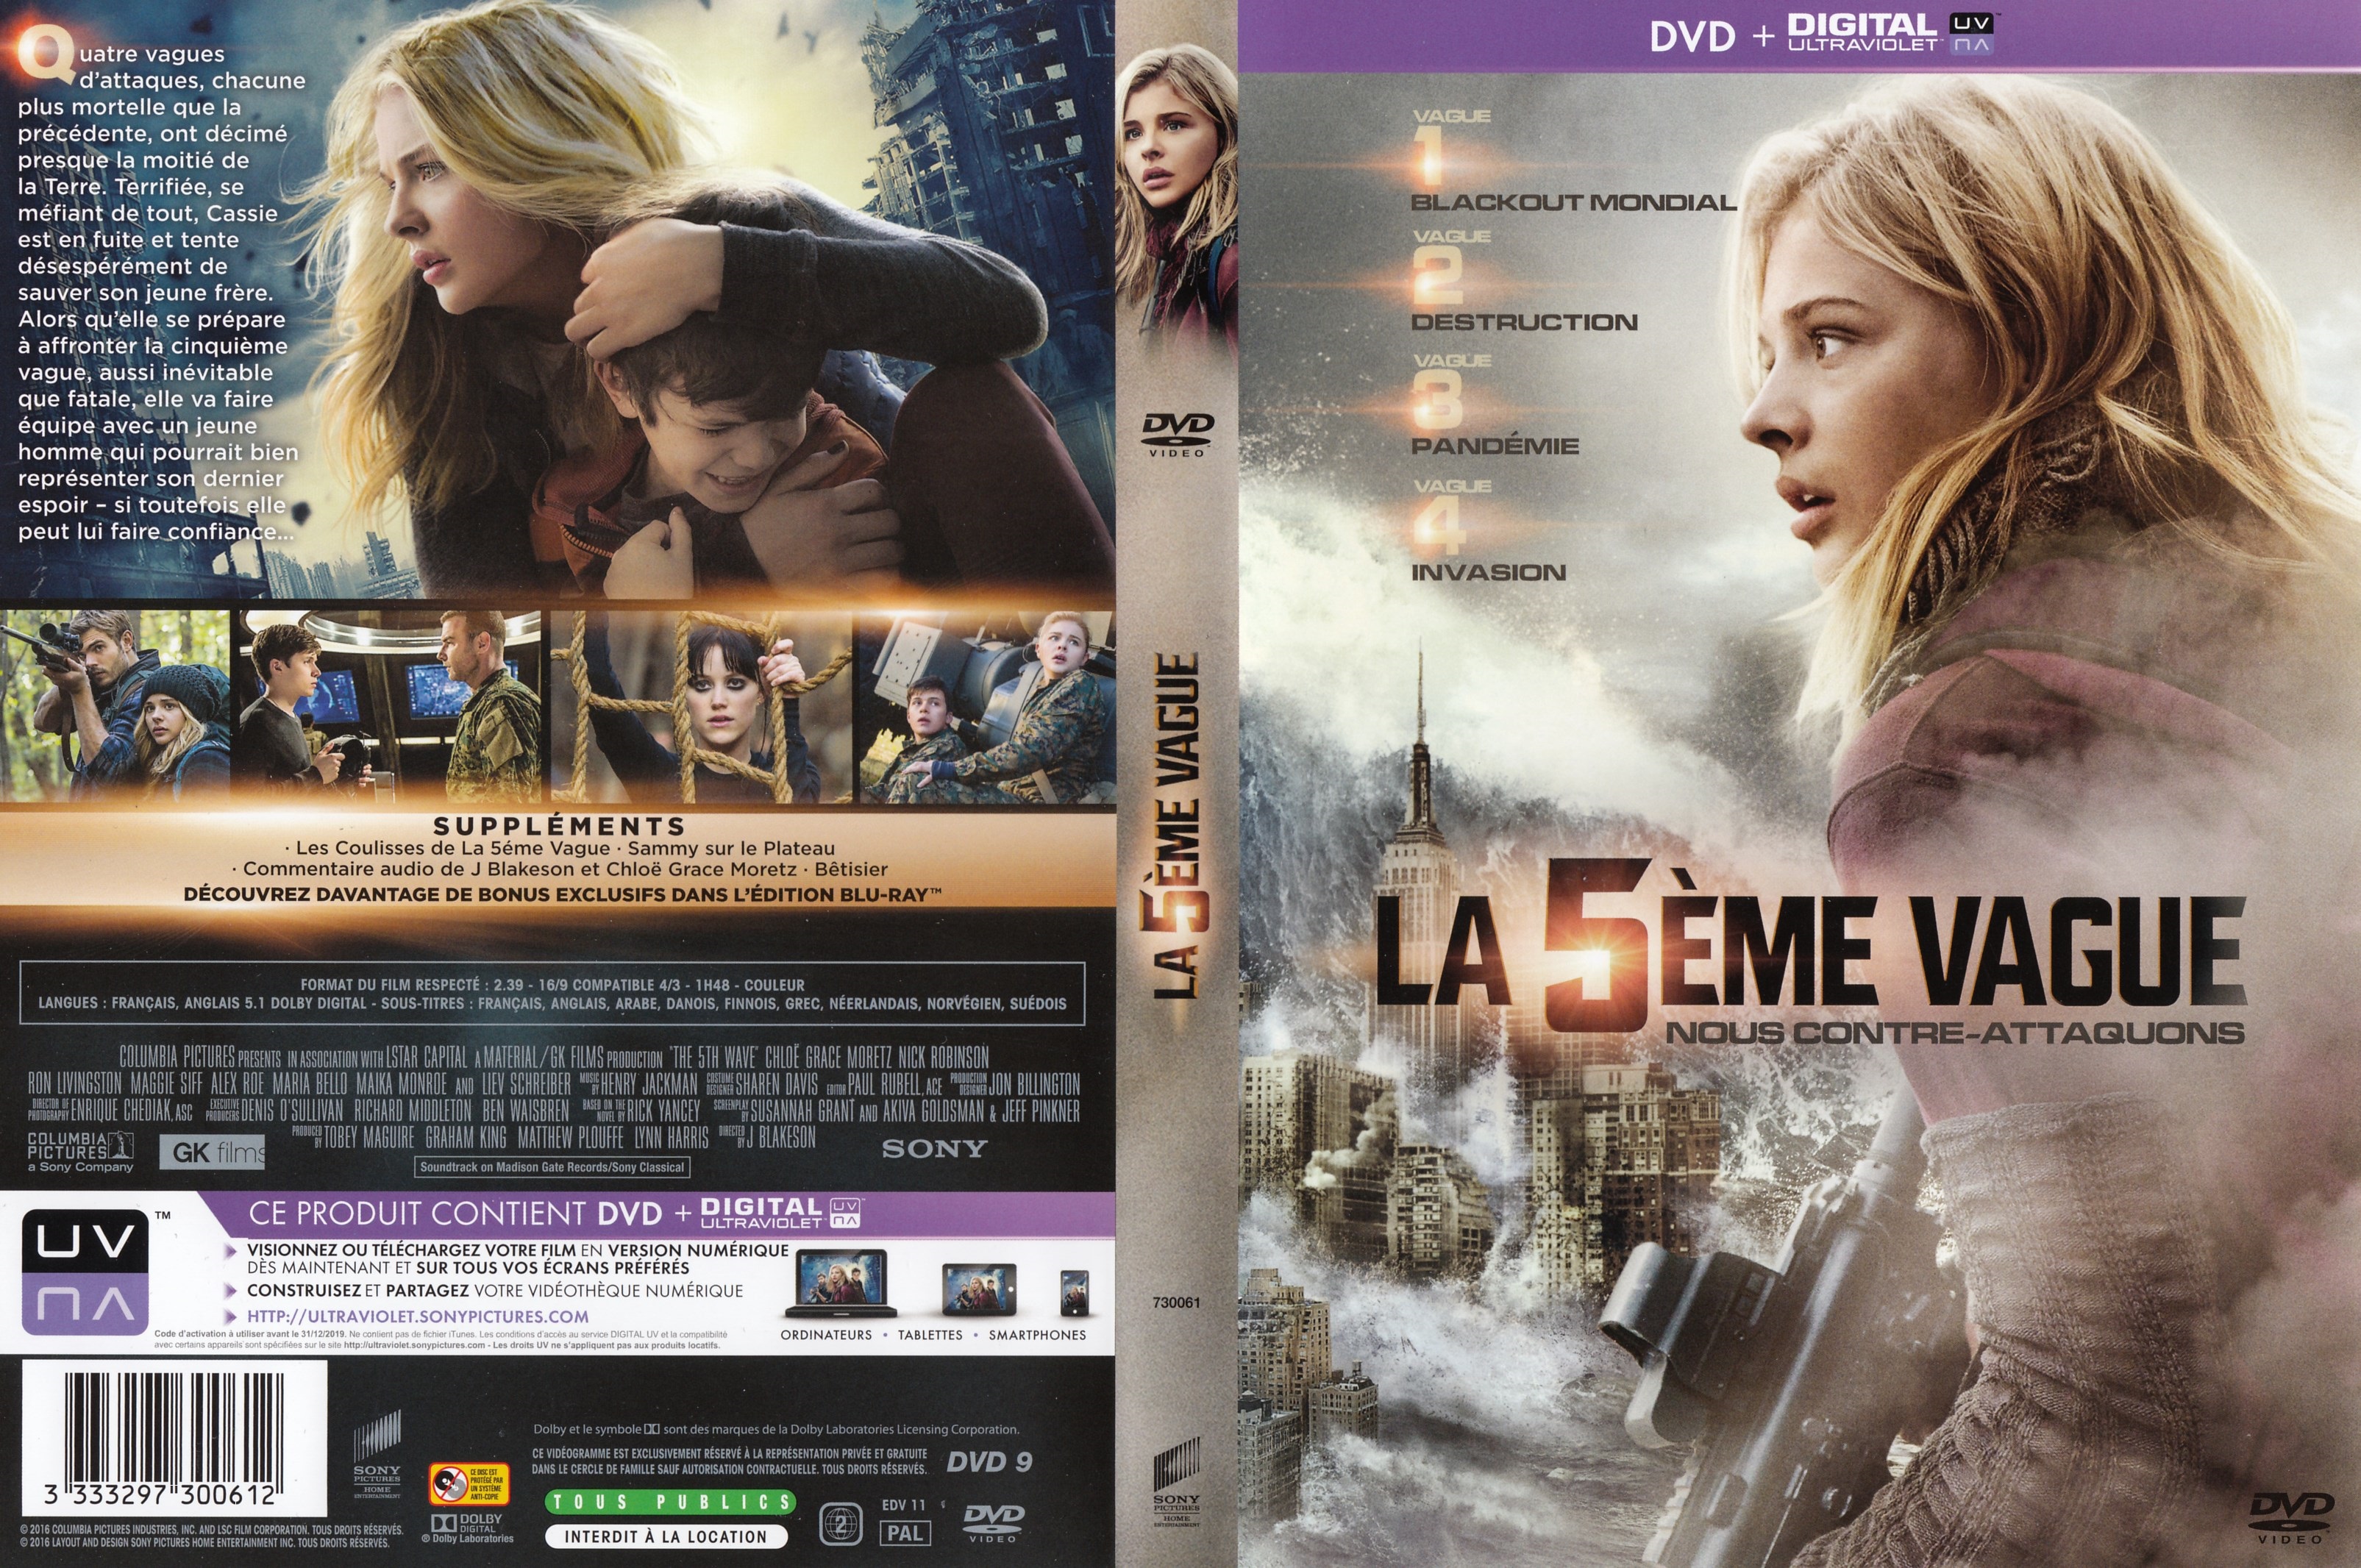 Jaquette DVD La 5me vague